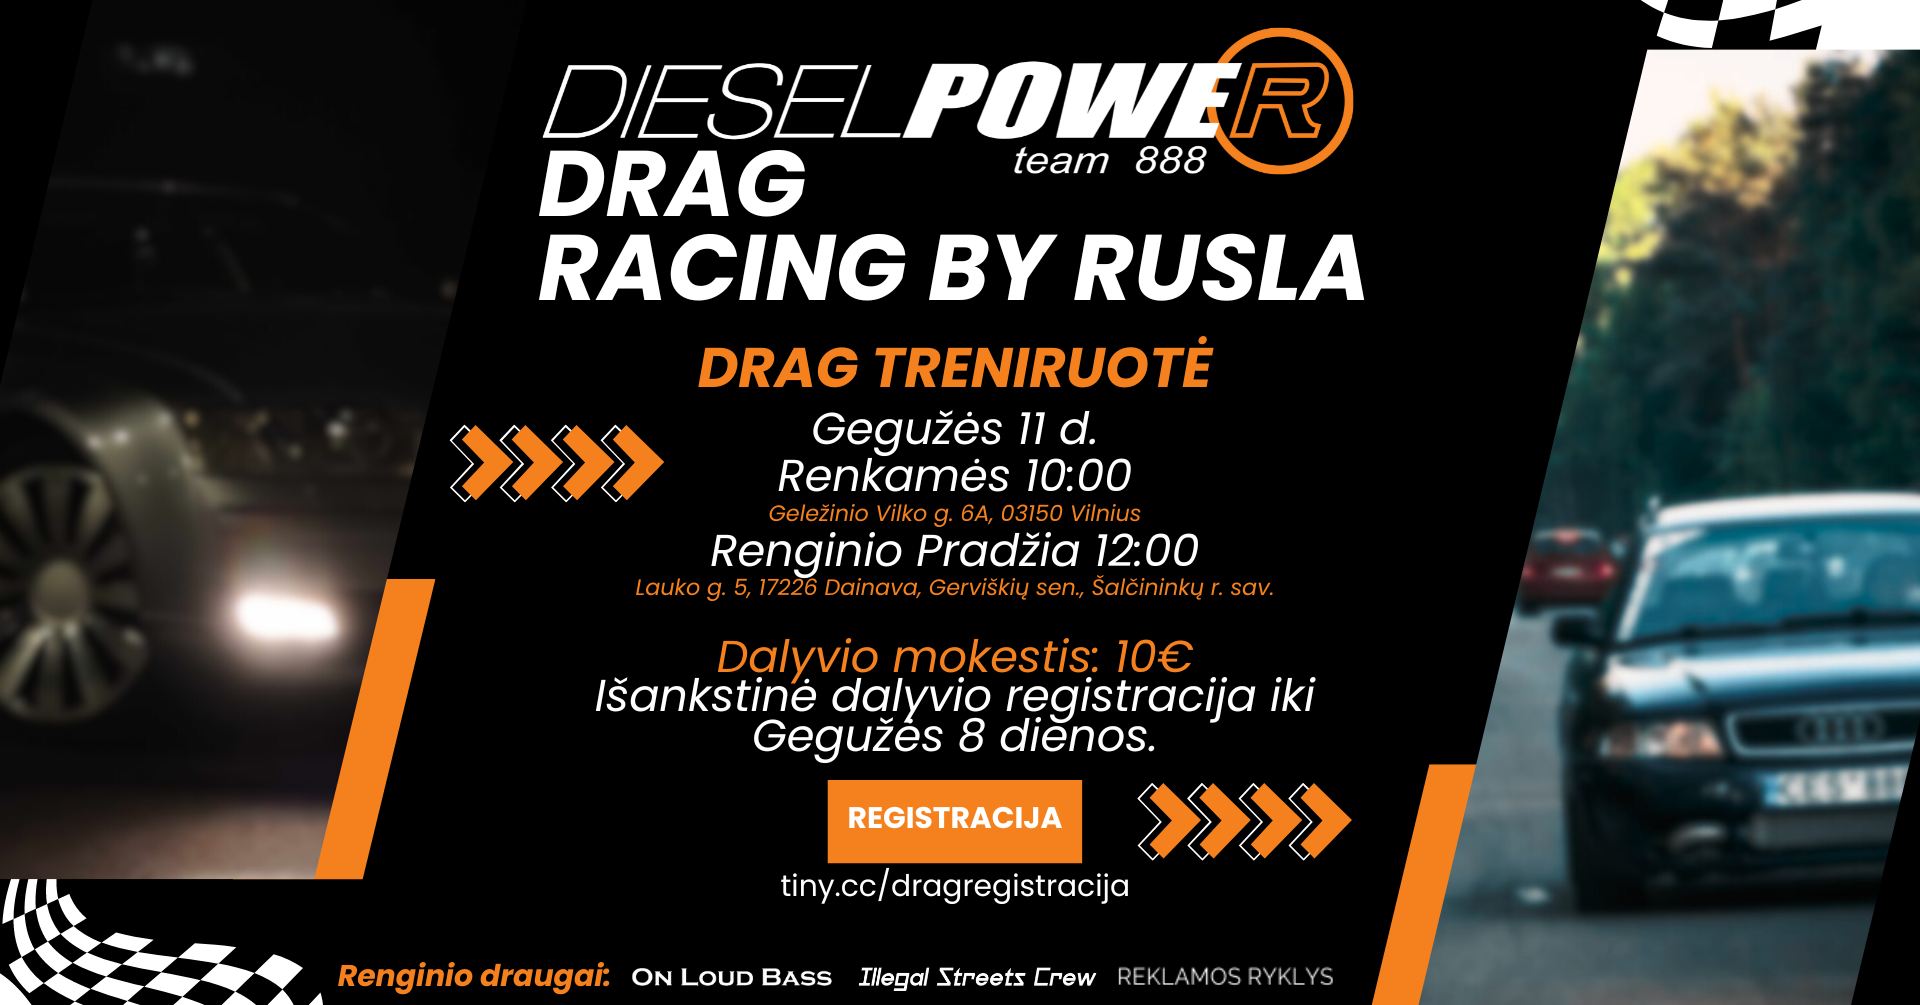 DieselPower Drag racing by Rusla - drag treniruotė